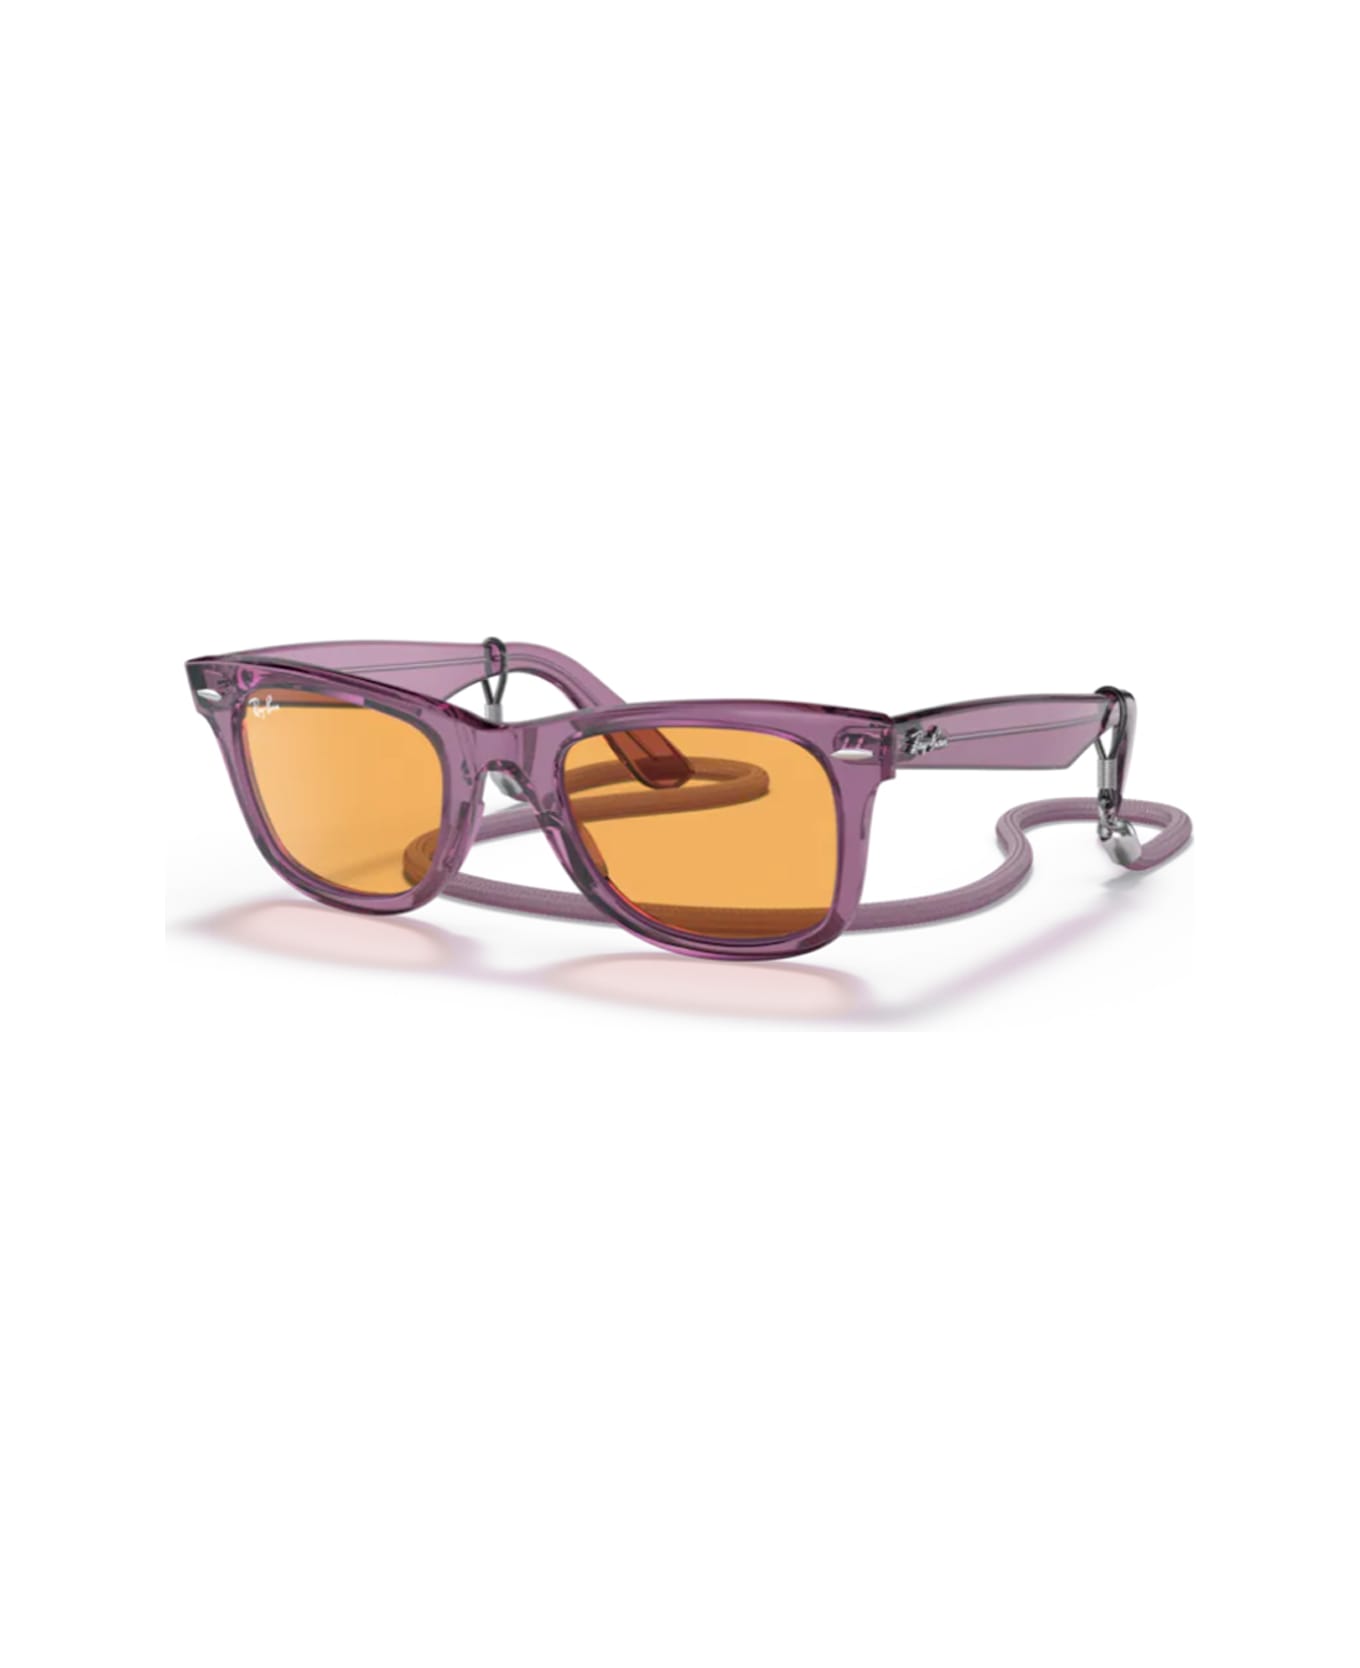 Ray-Ban Rb2140 Wayfarer Sunglasses - Viola